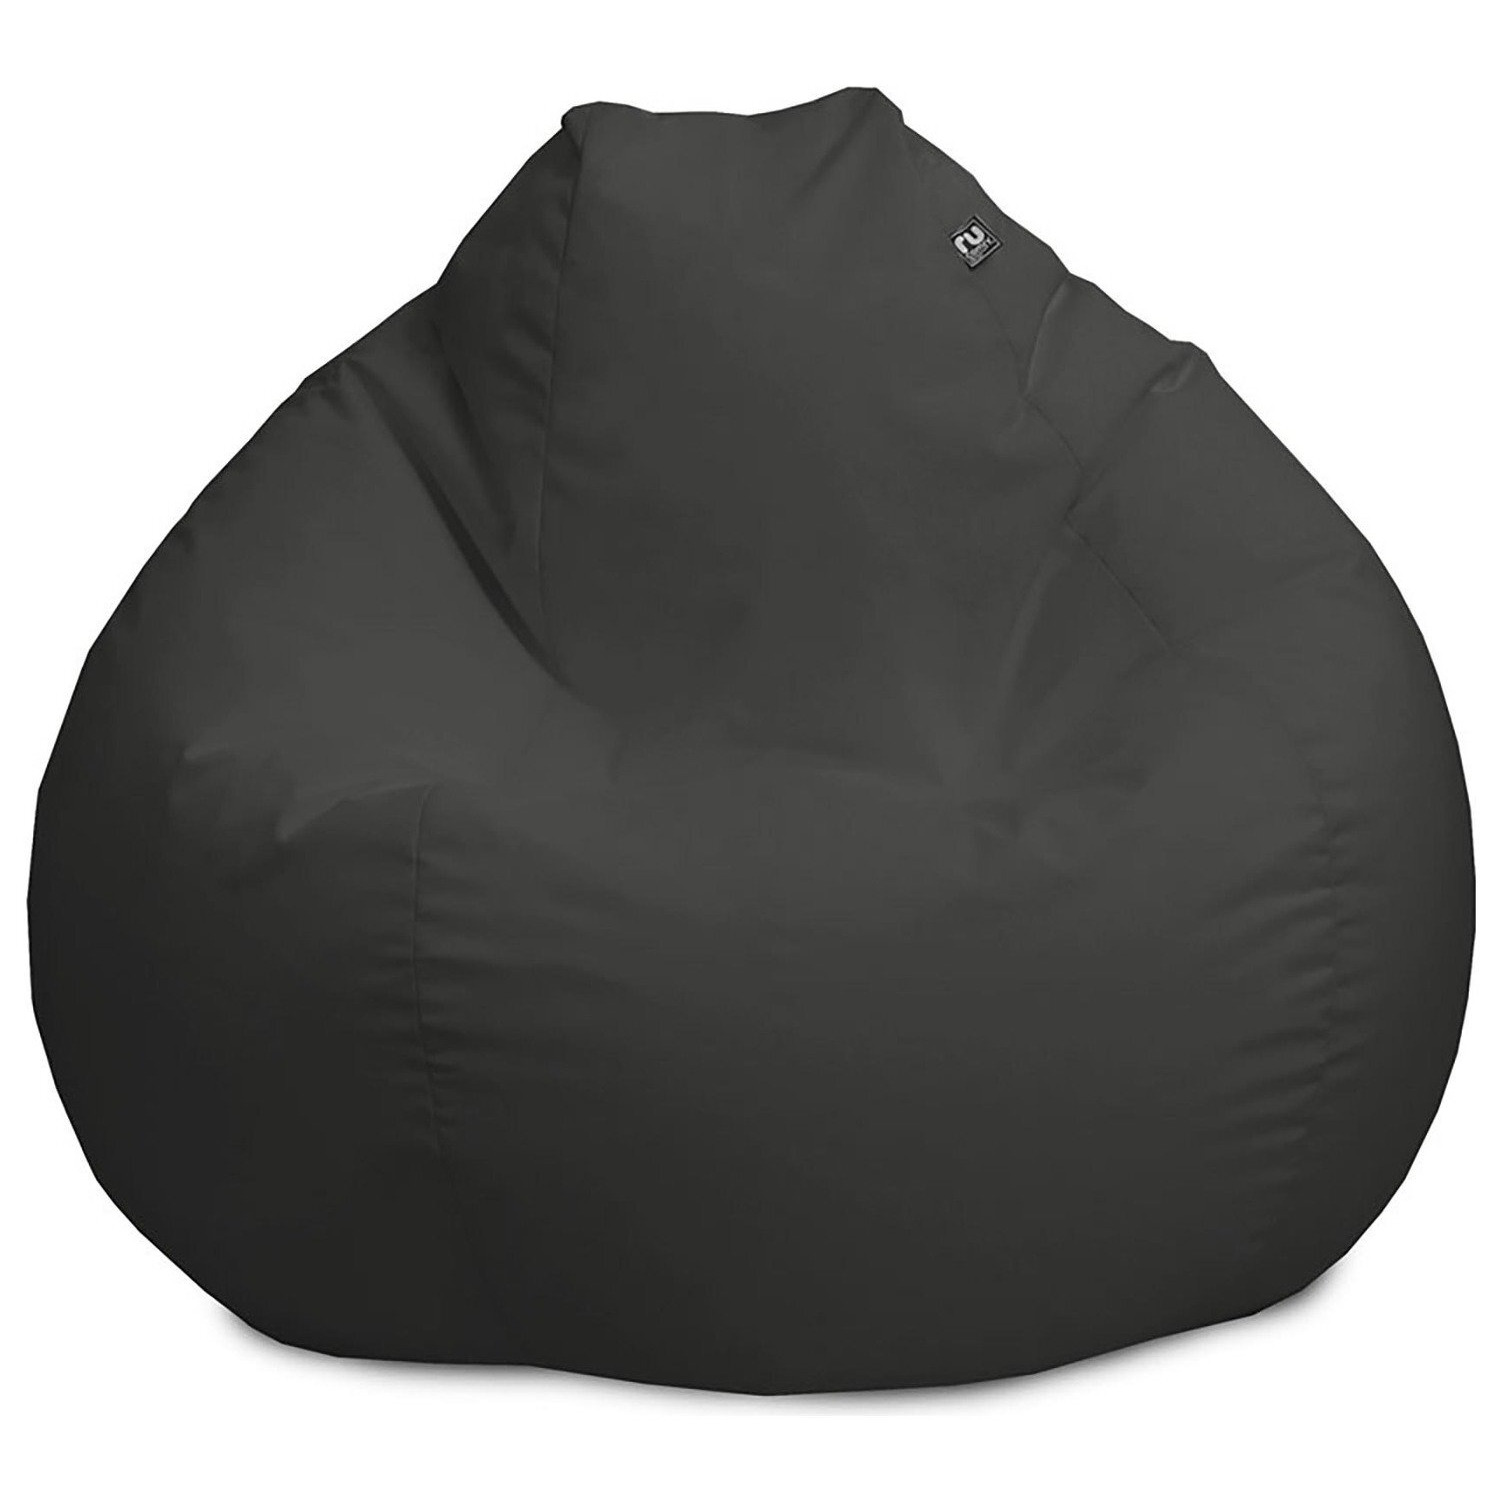 rucomfy Indoor Outdoor Bean Bag - Dark Grey - image 1